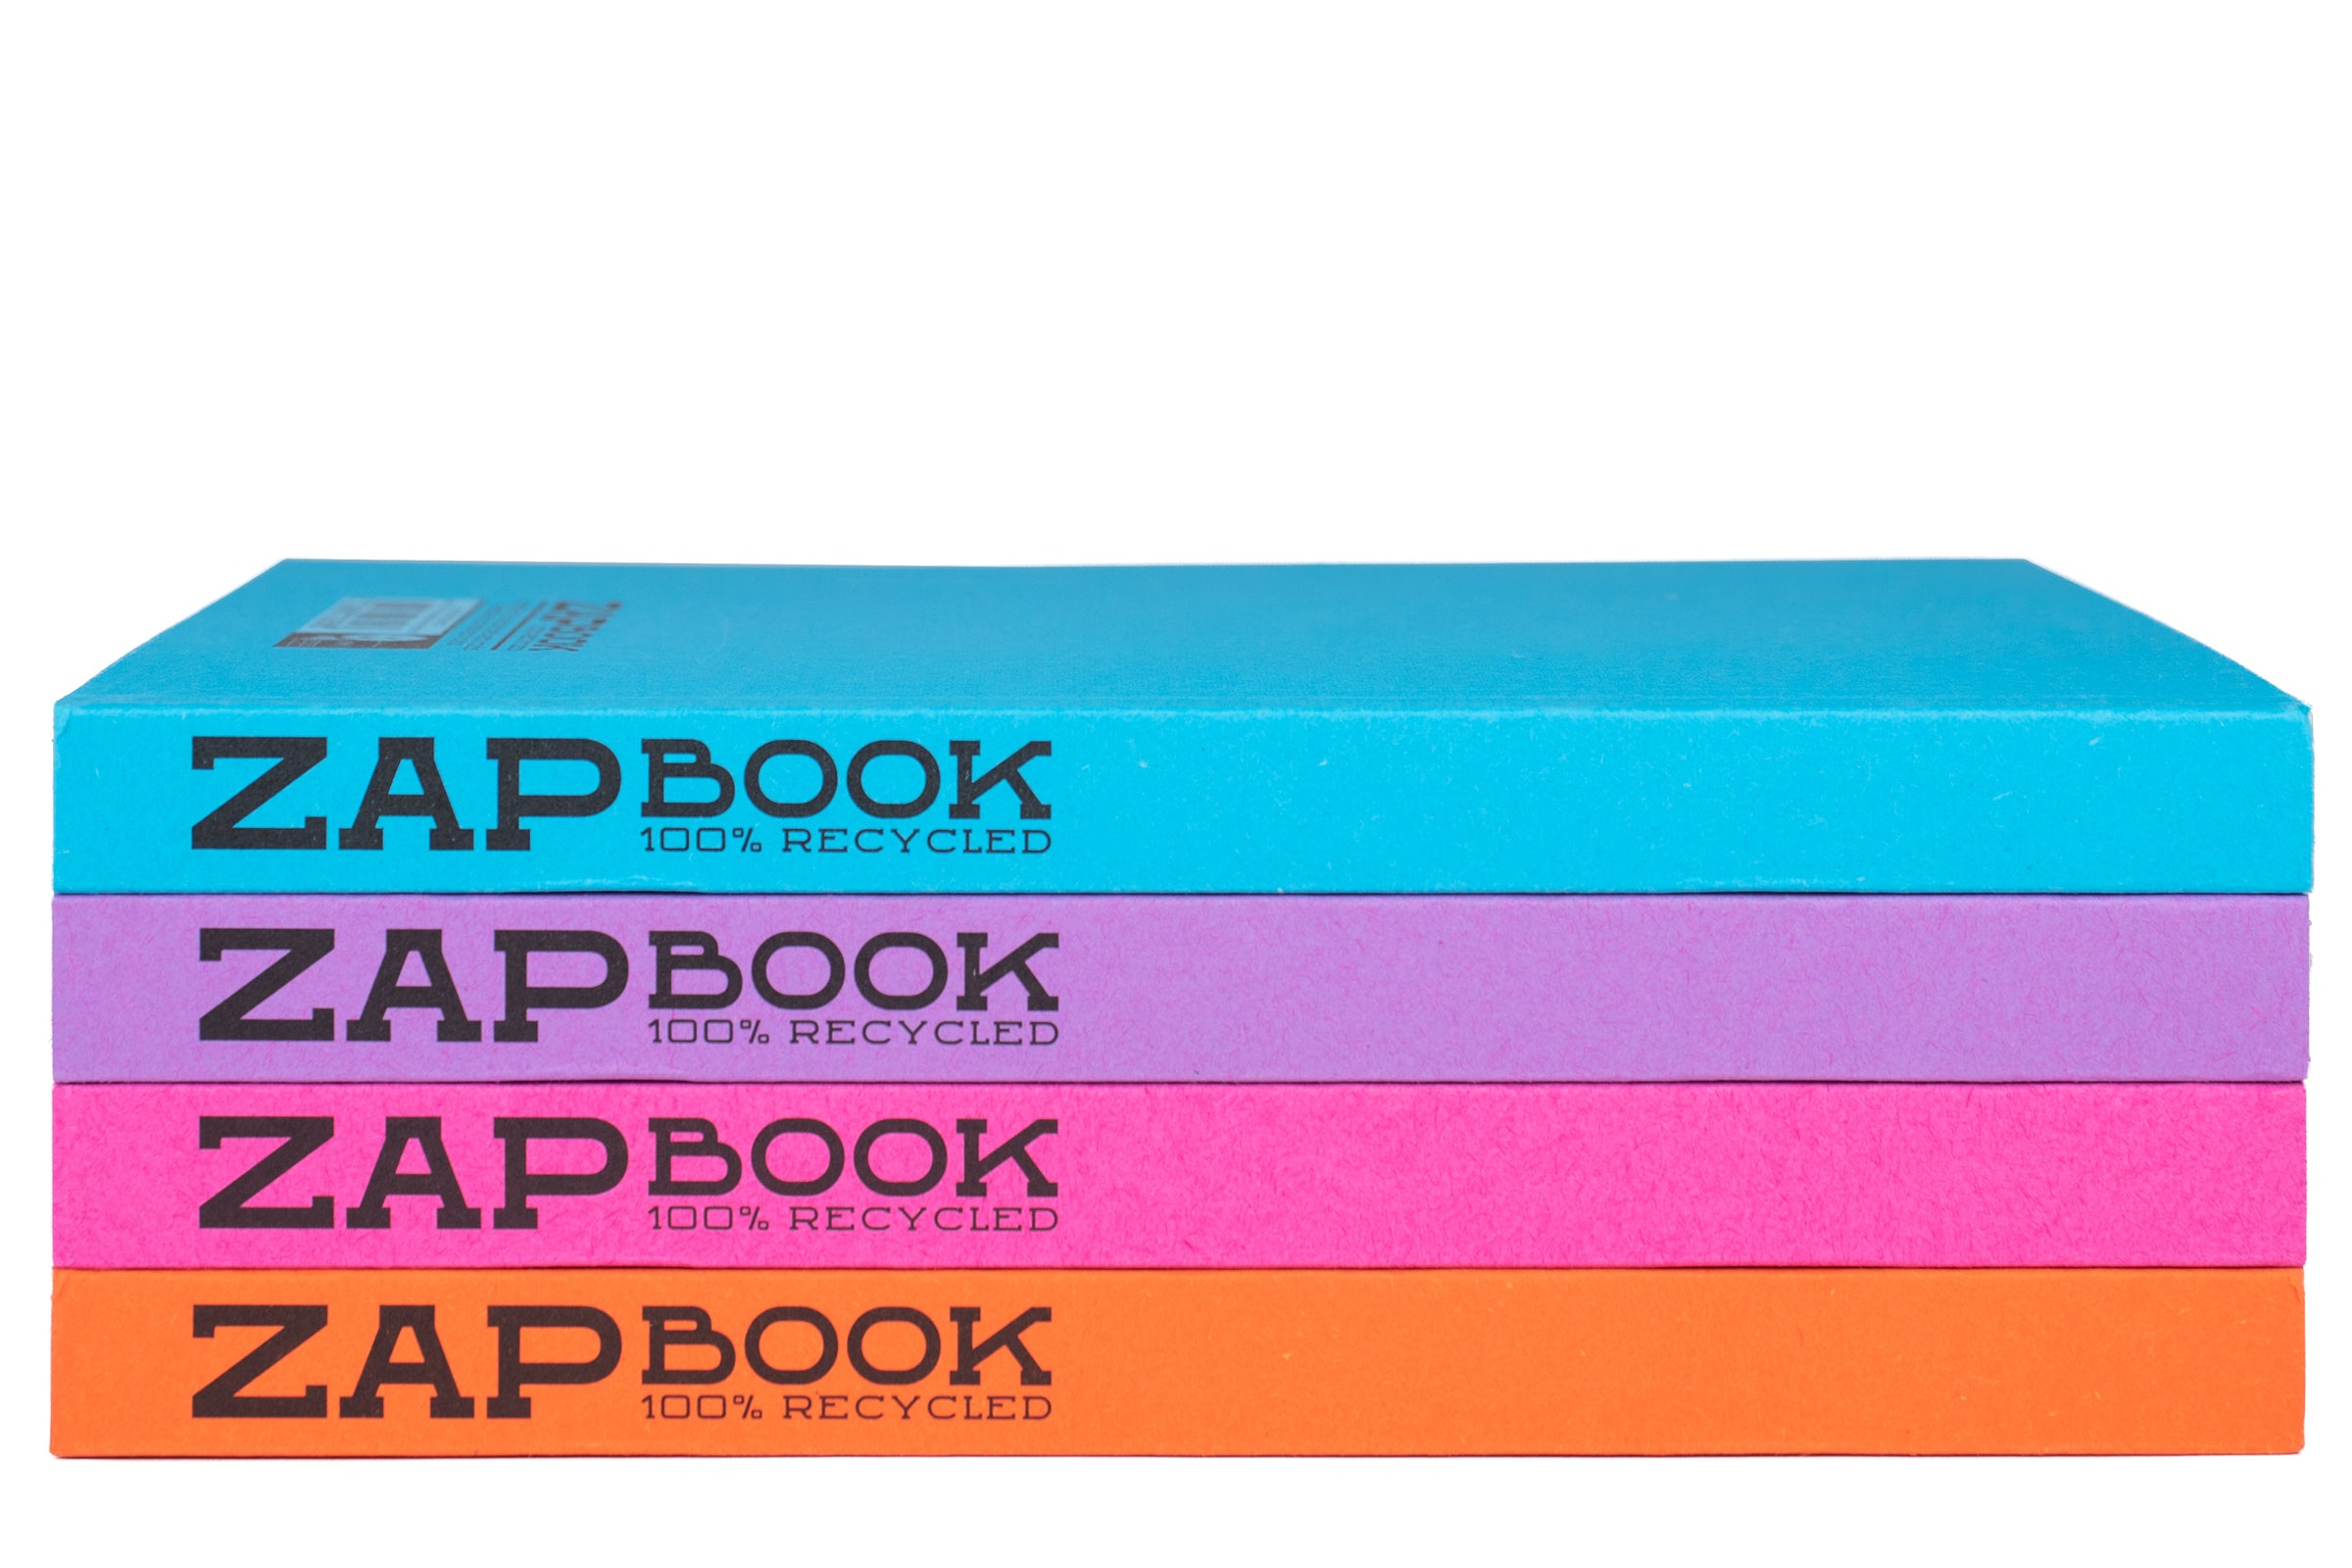 Clairefontaine Zap Book - carnet de croquis spiralé - couverture